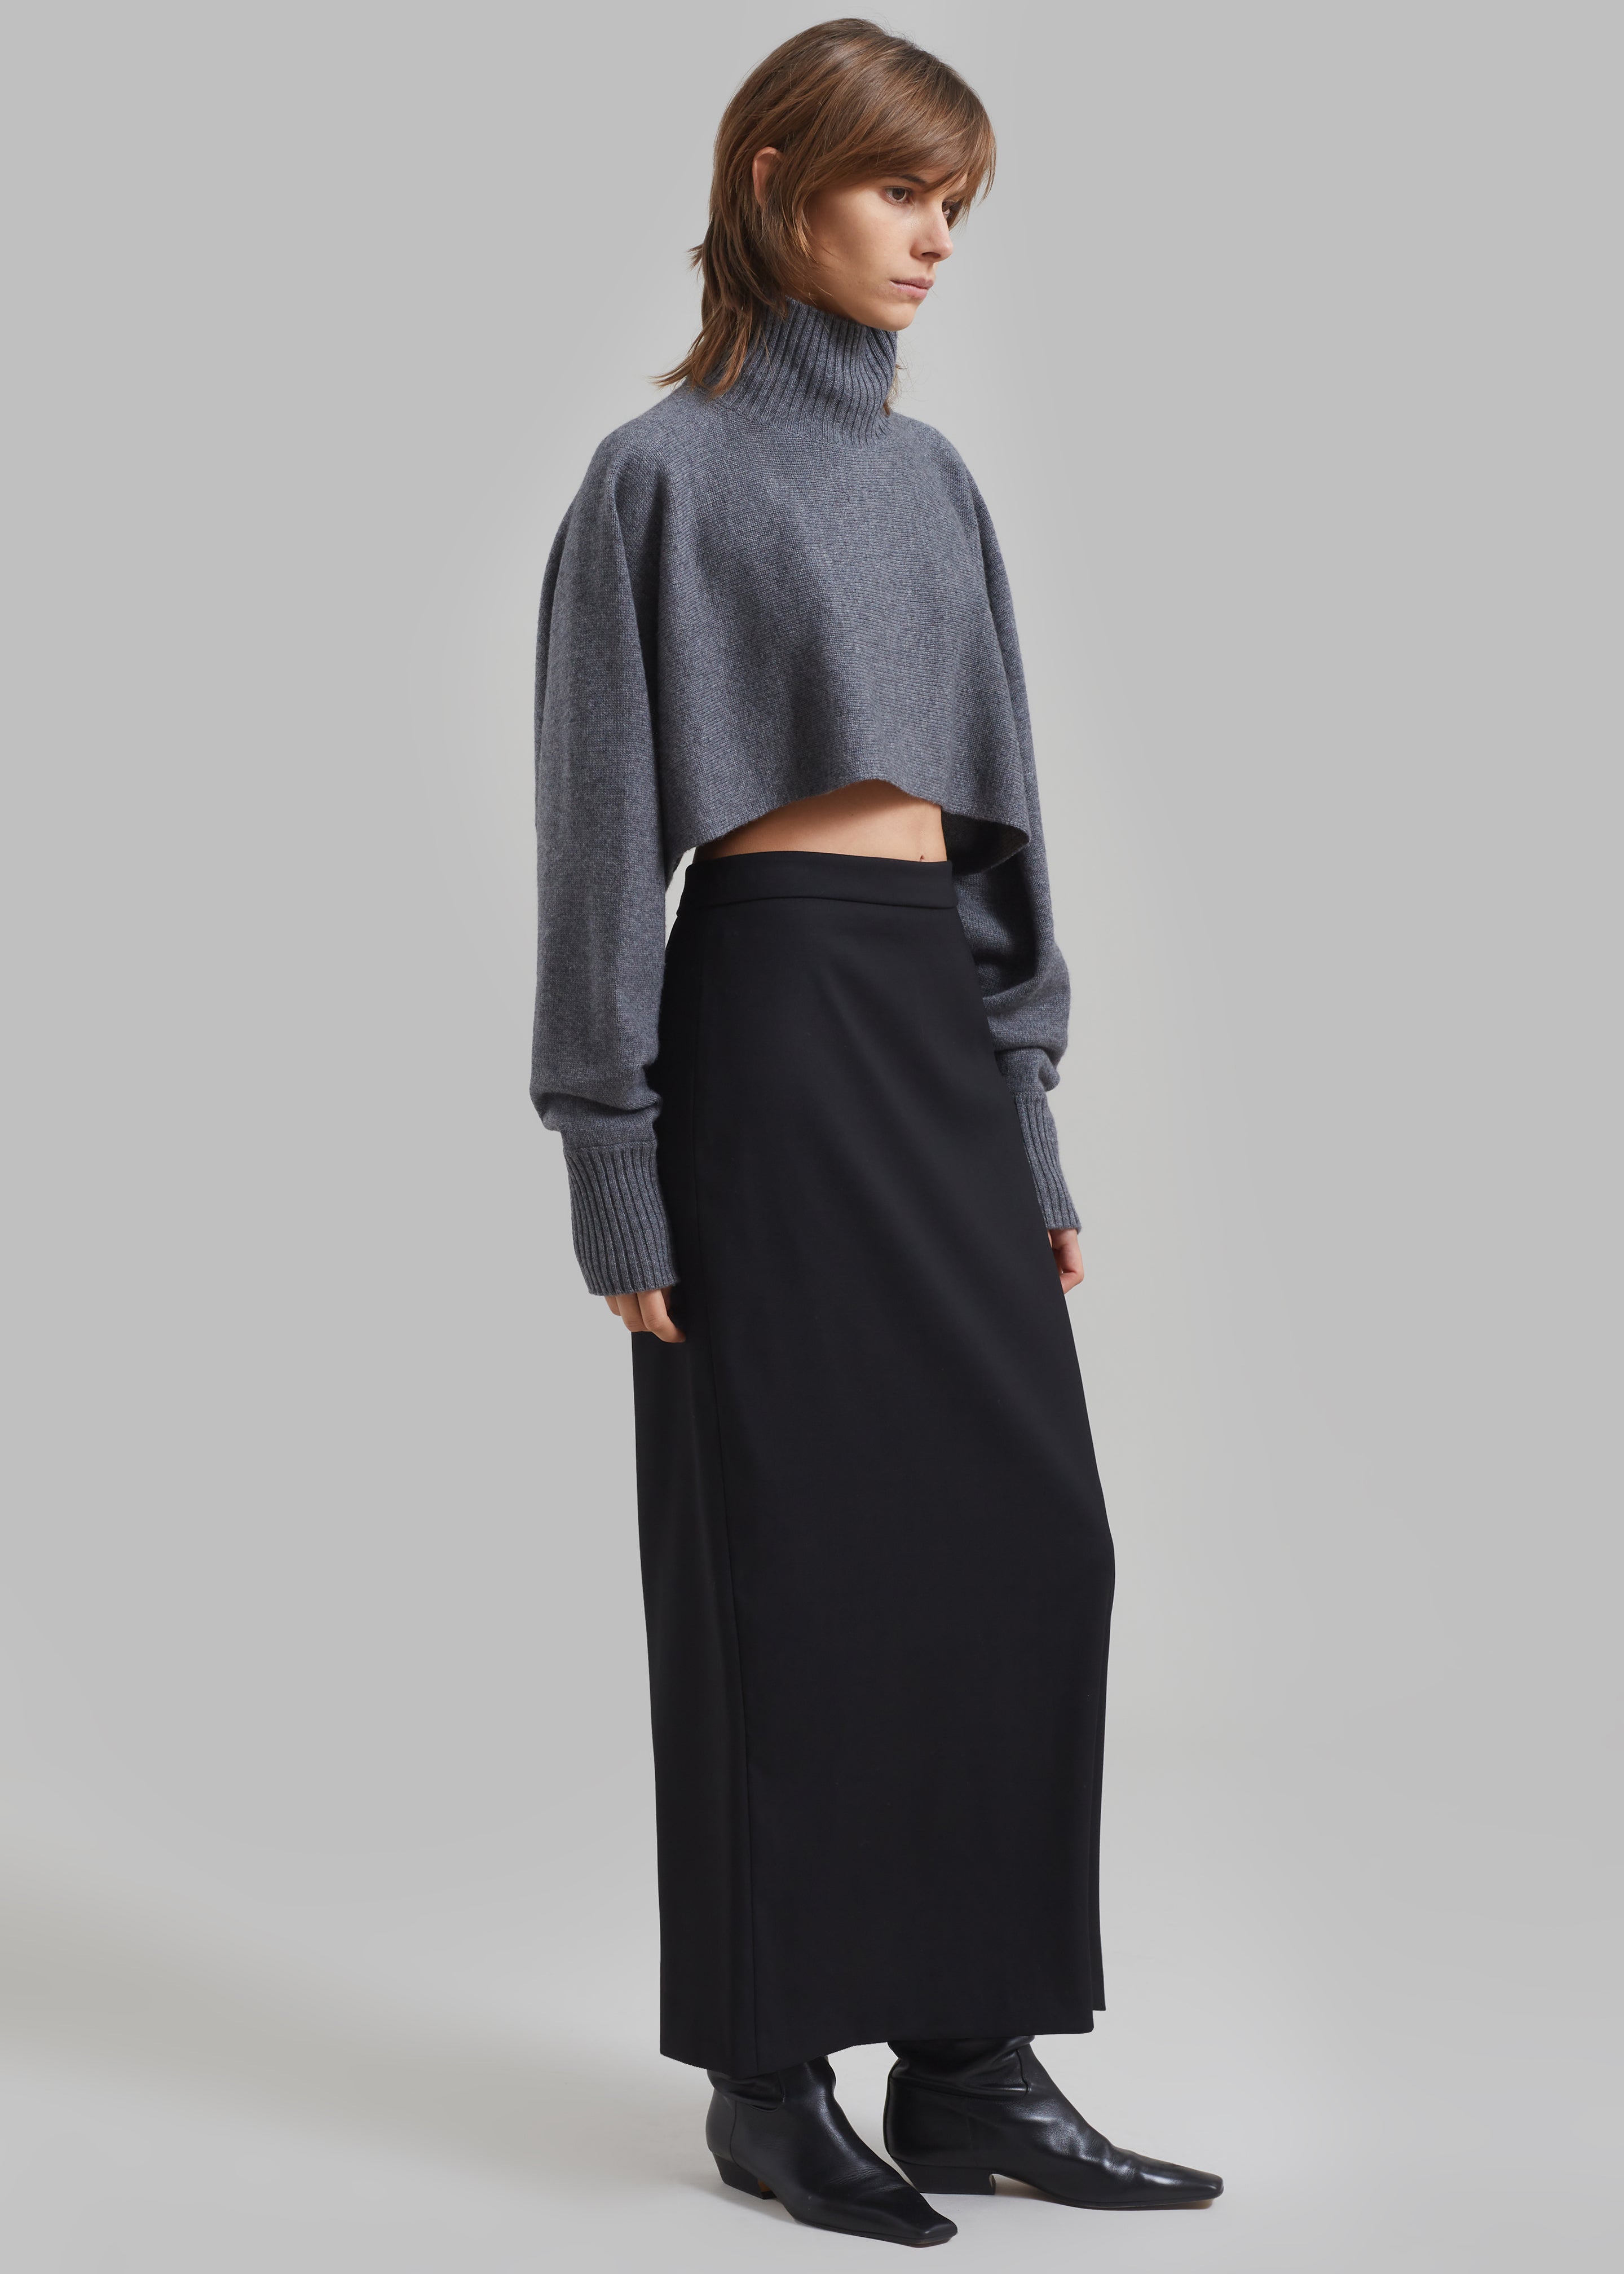 Miranda Long Pencil Skirt - Black - 1